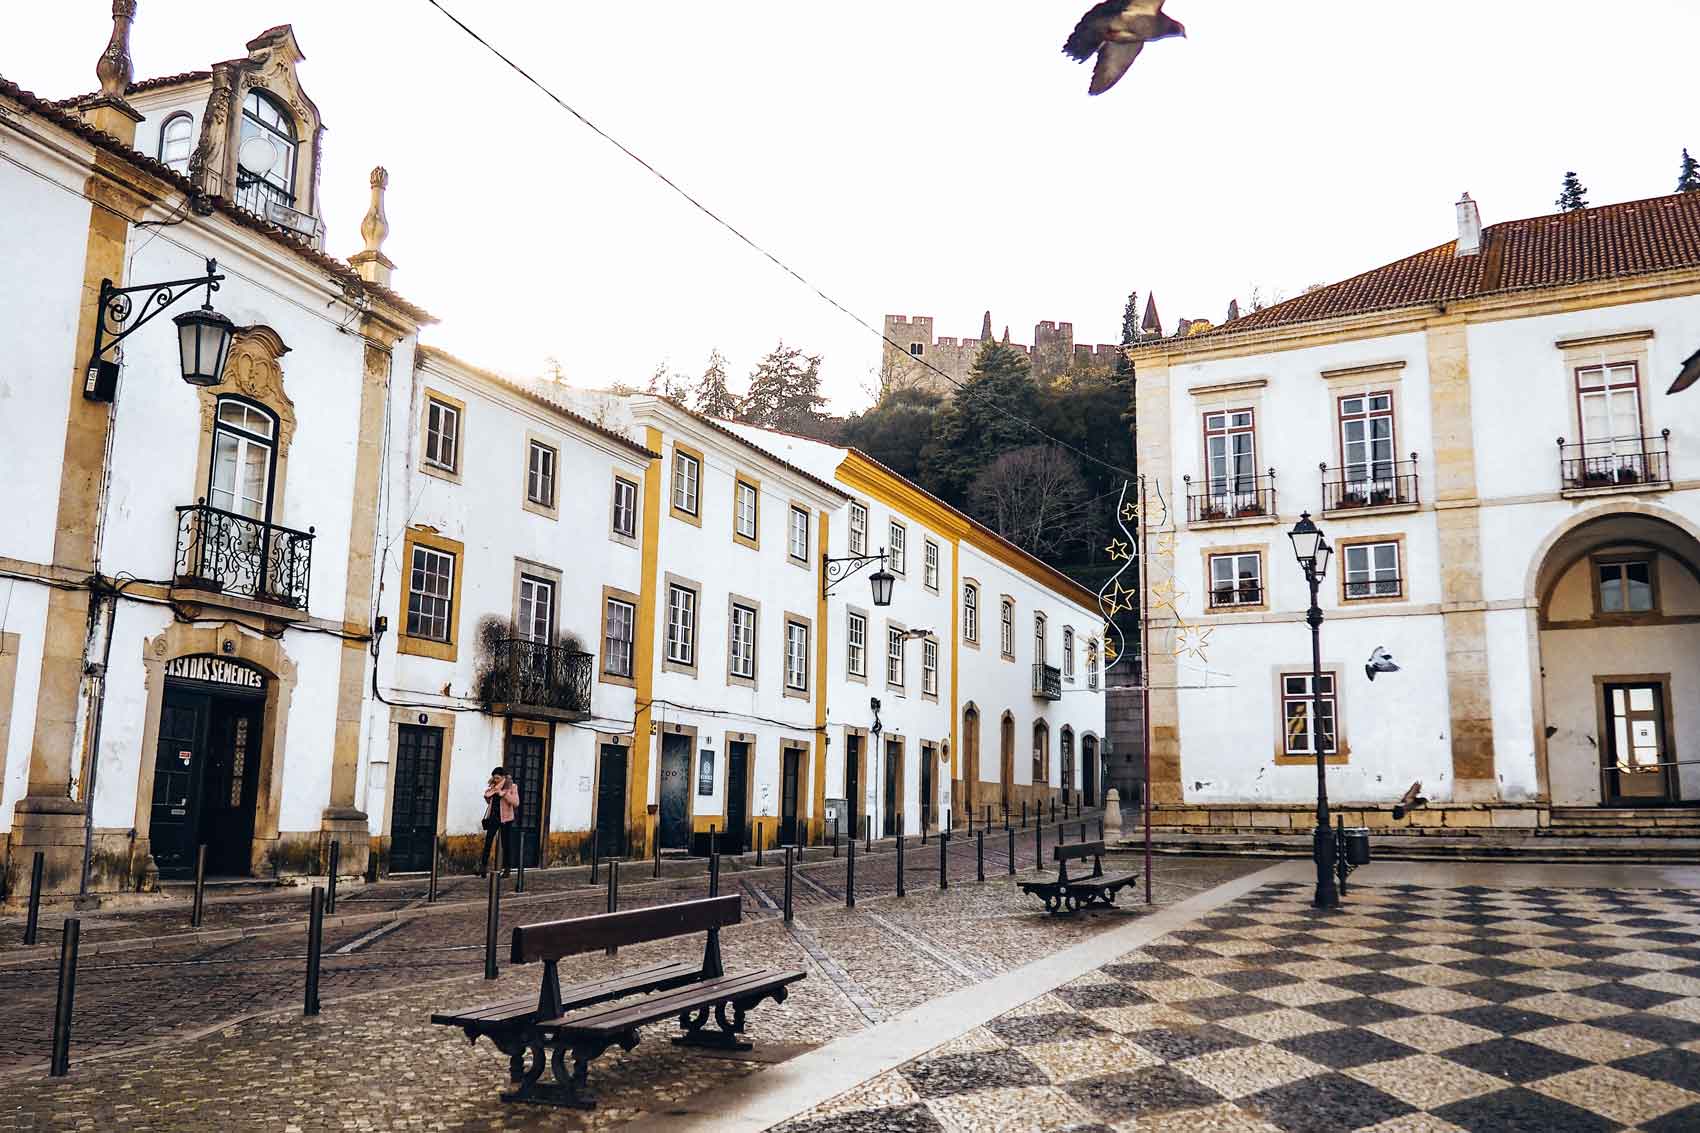 Pueblos bonitos centro de Portugal - Tomar